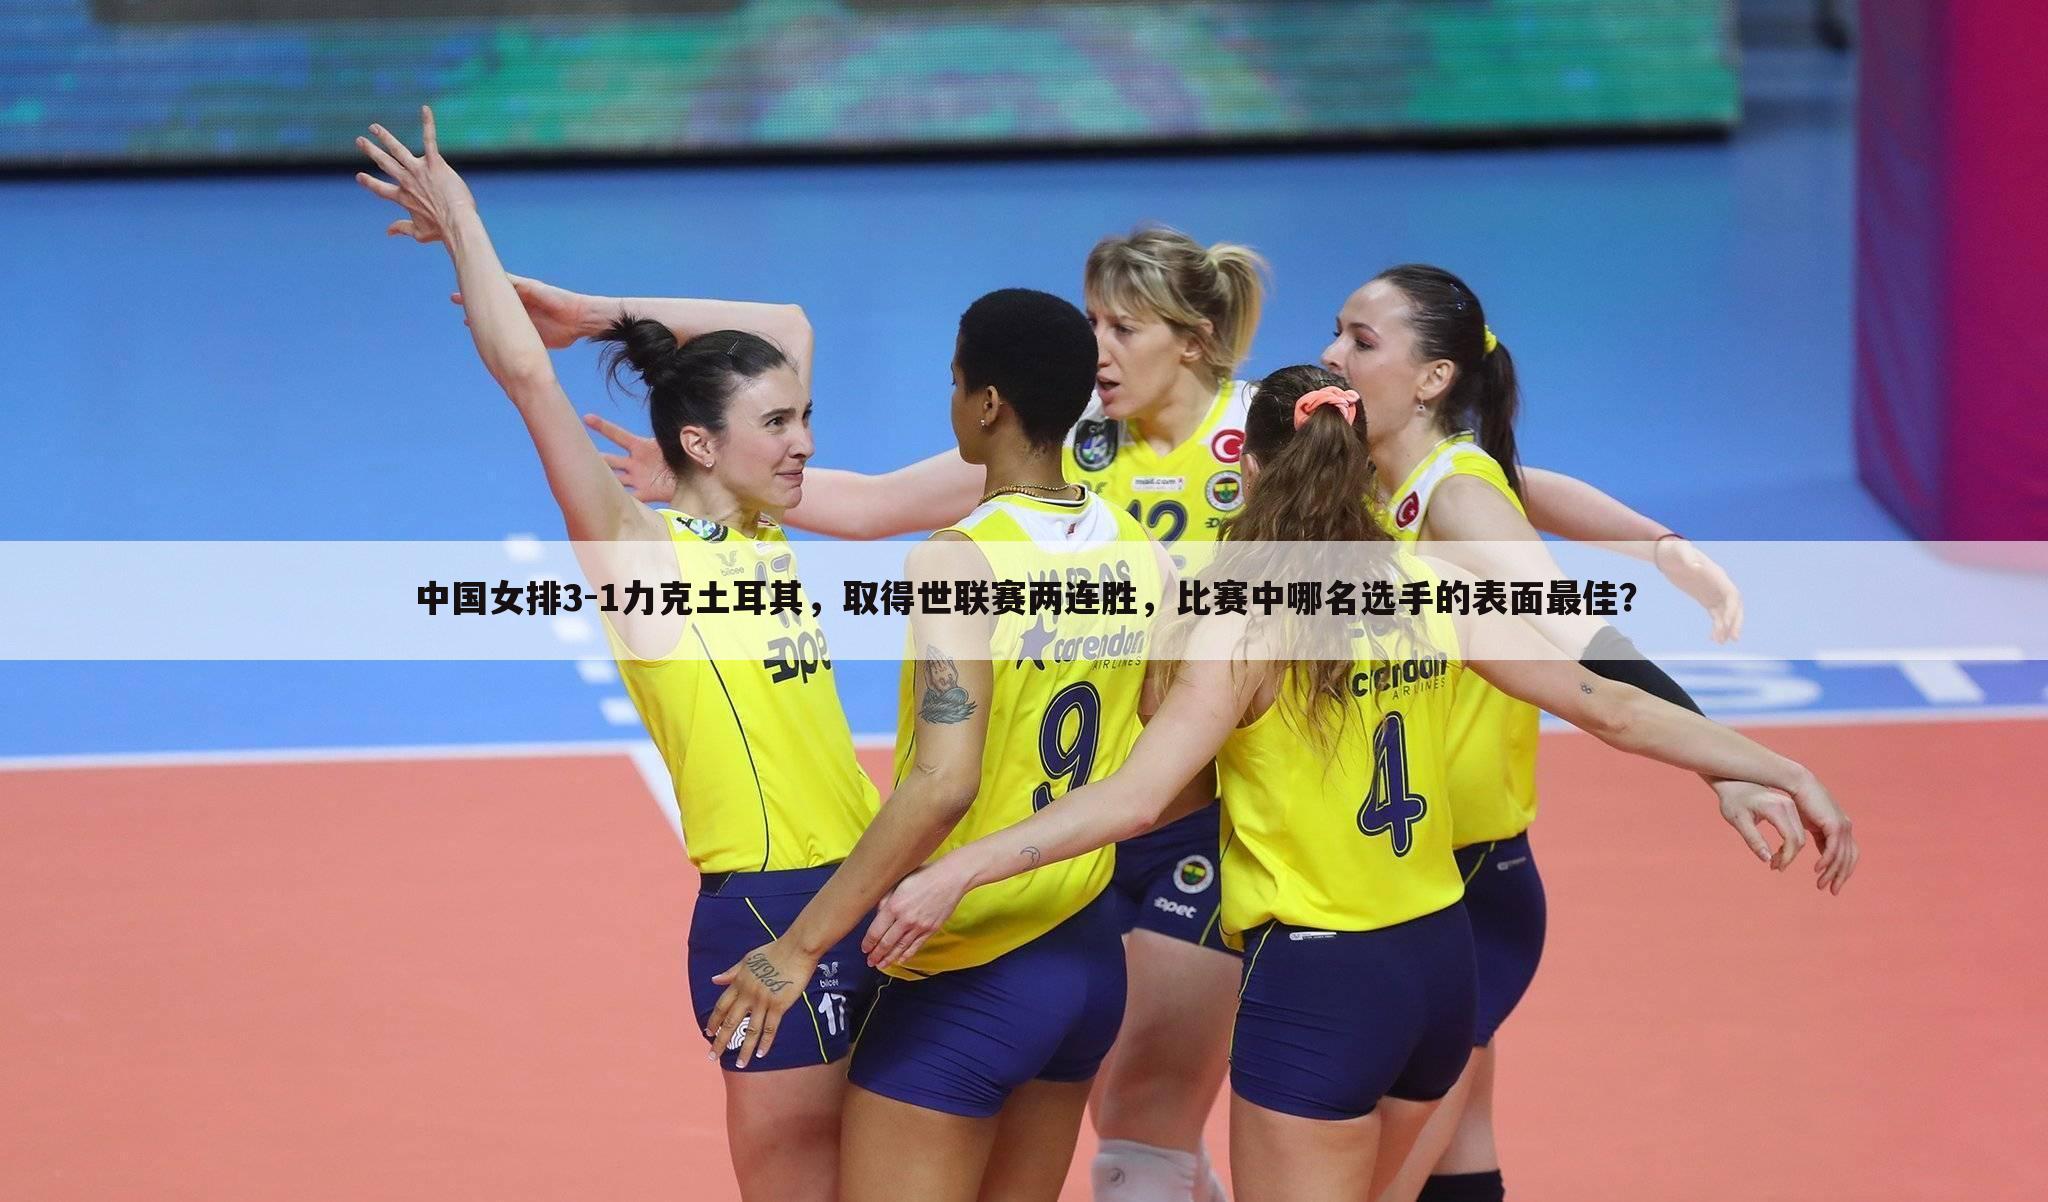 (中国女排对土耳其女排)中国女排3-1力克土耳其，取得世联赛两连胜，比赛中哪